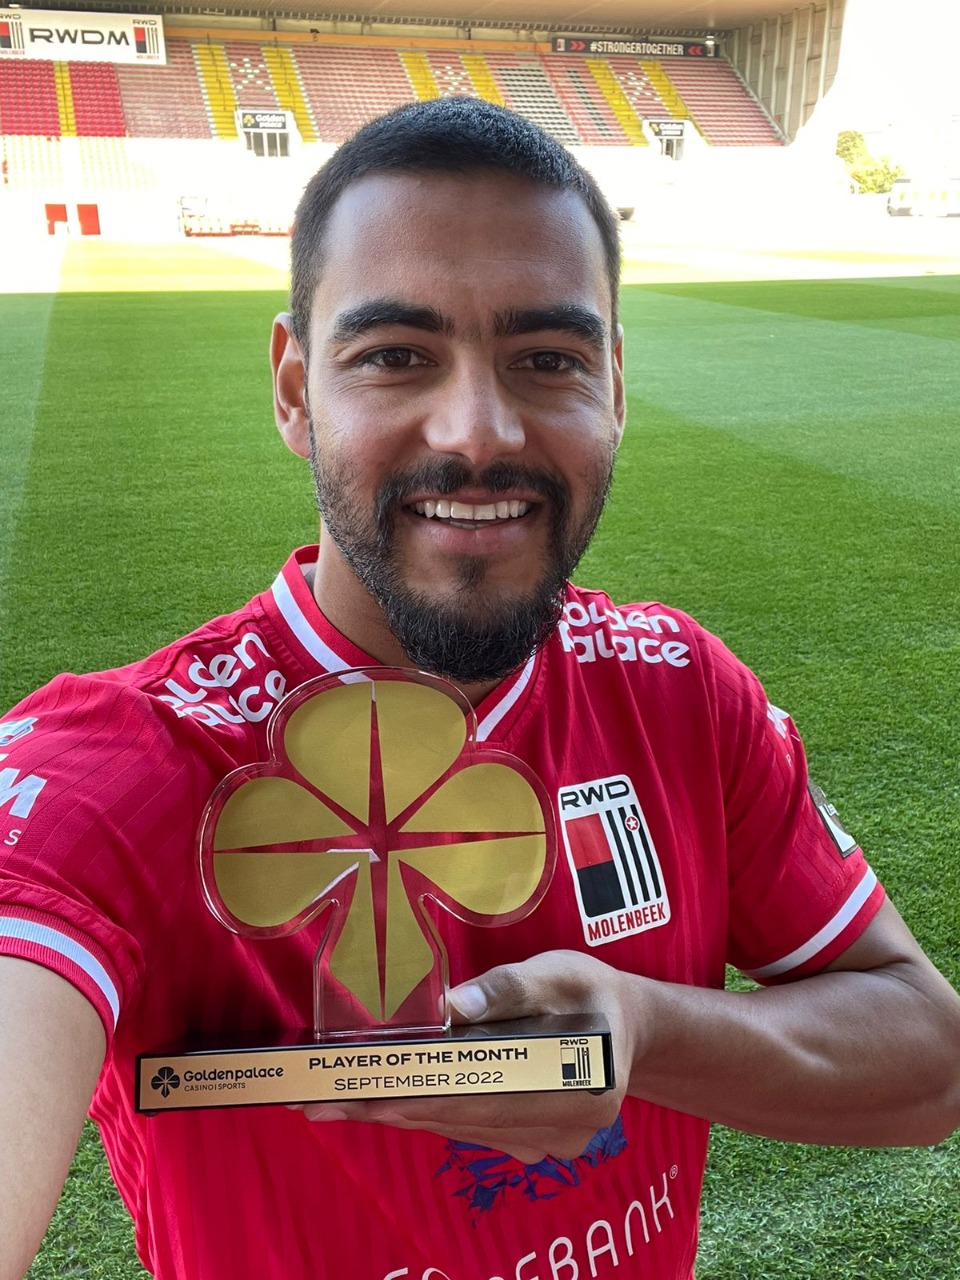 Ex-Botafogo, volante Barreto é eleito melhor jogador do mês de setembro no RWD Molenbeek